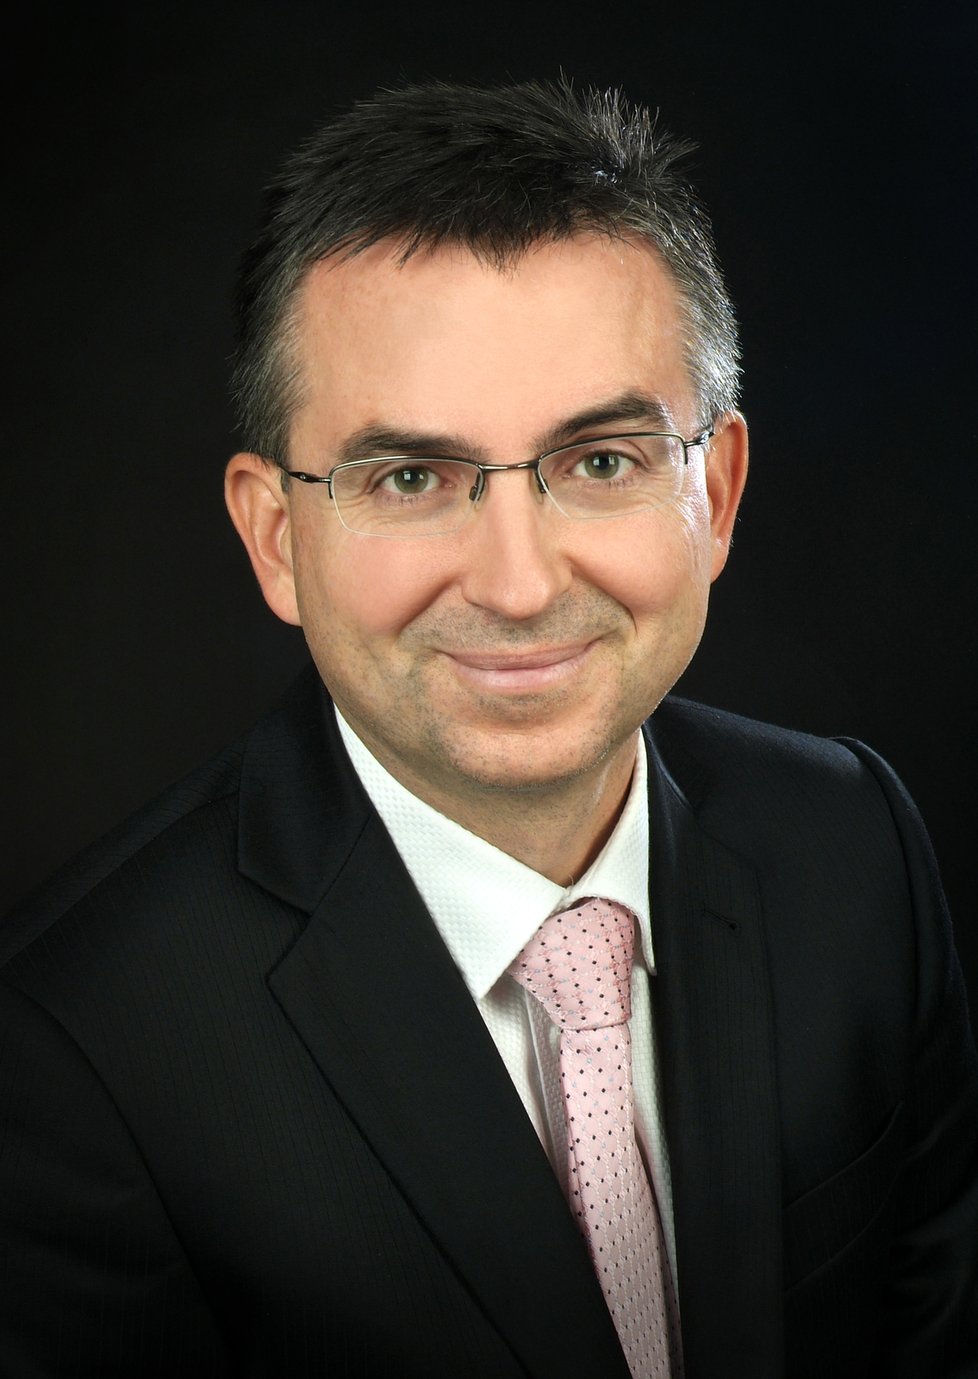  Ing. Martin Pajer, ředitel společnosti Cebia